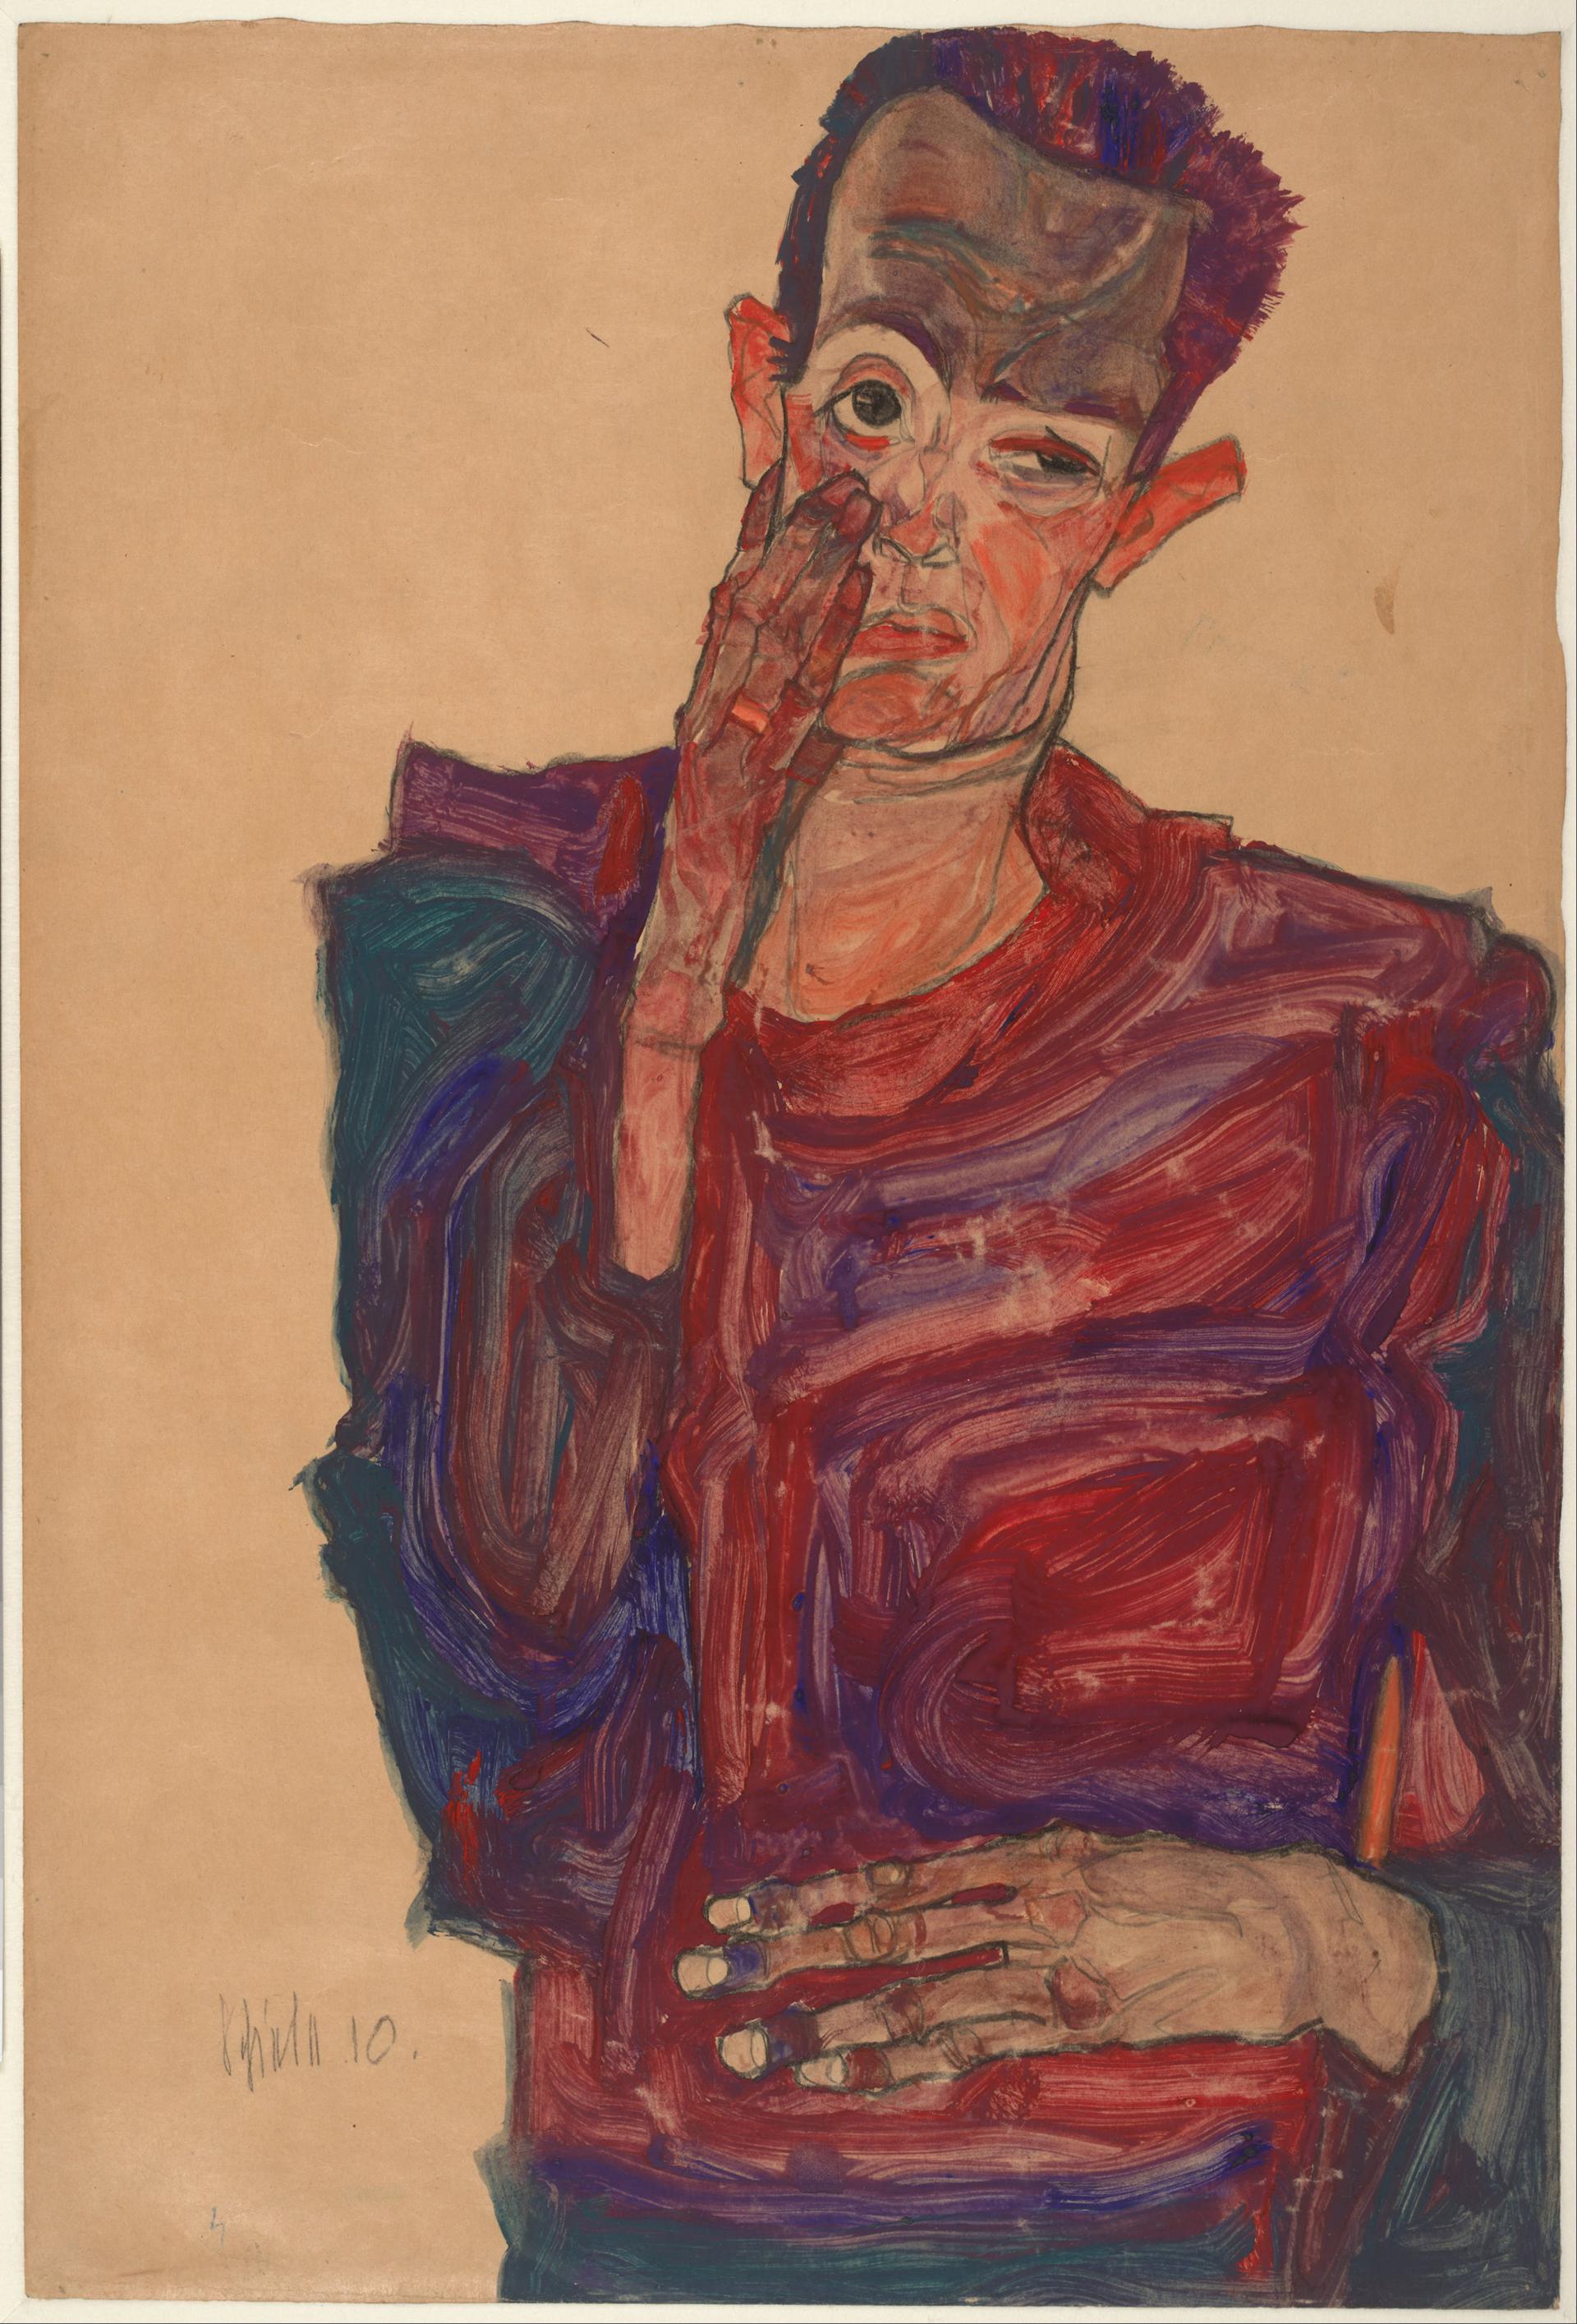 0141_席勒_Egon Schiele 1890–1918-Self-Portrait with Eyelid Pulled Down _2844x5199PX_TIF_97DPI_34_0